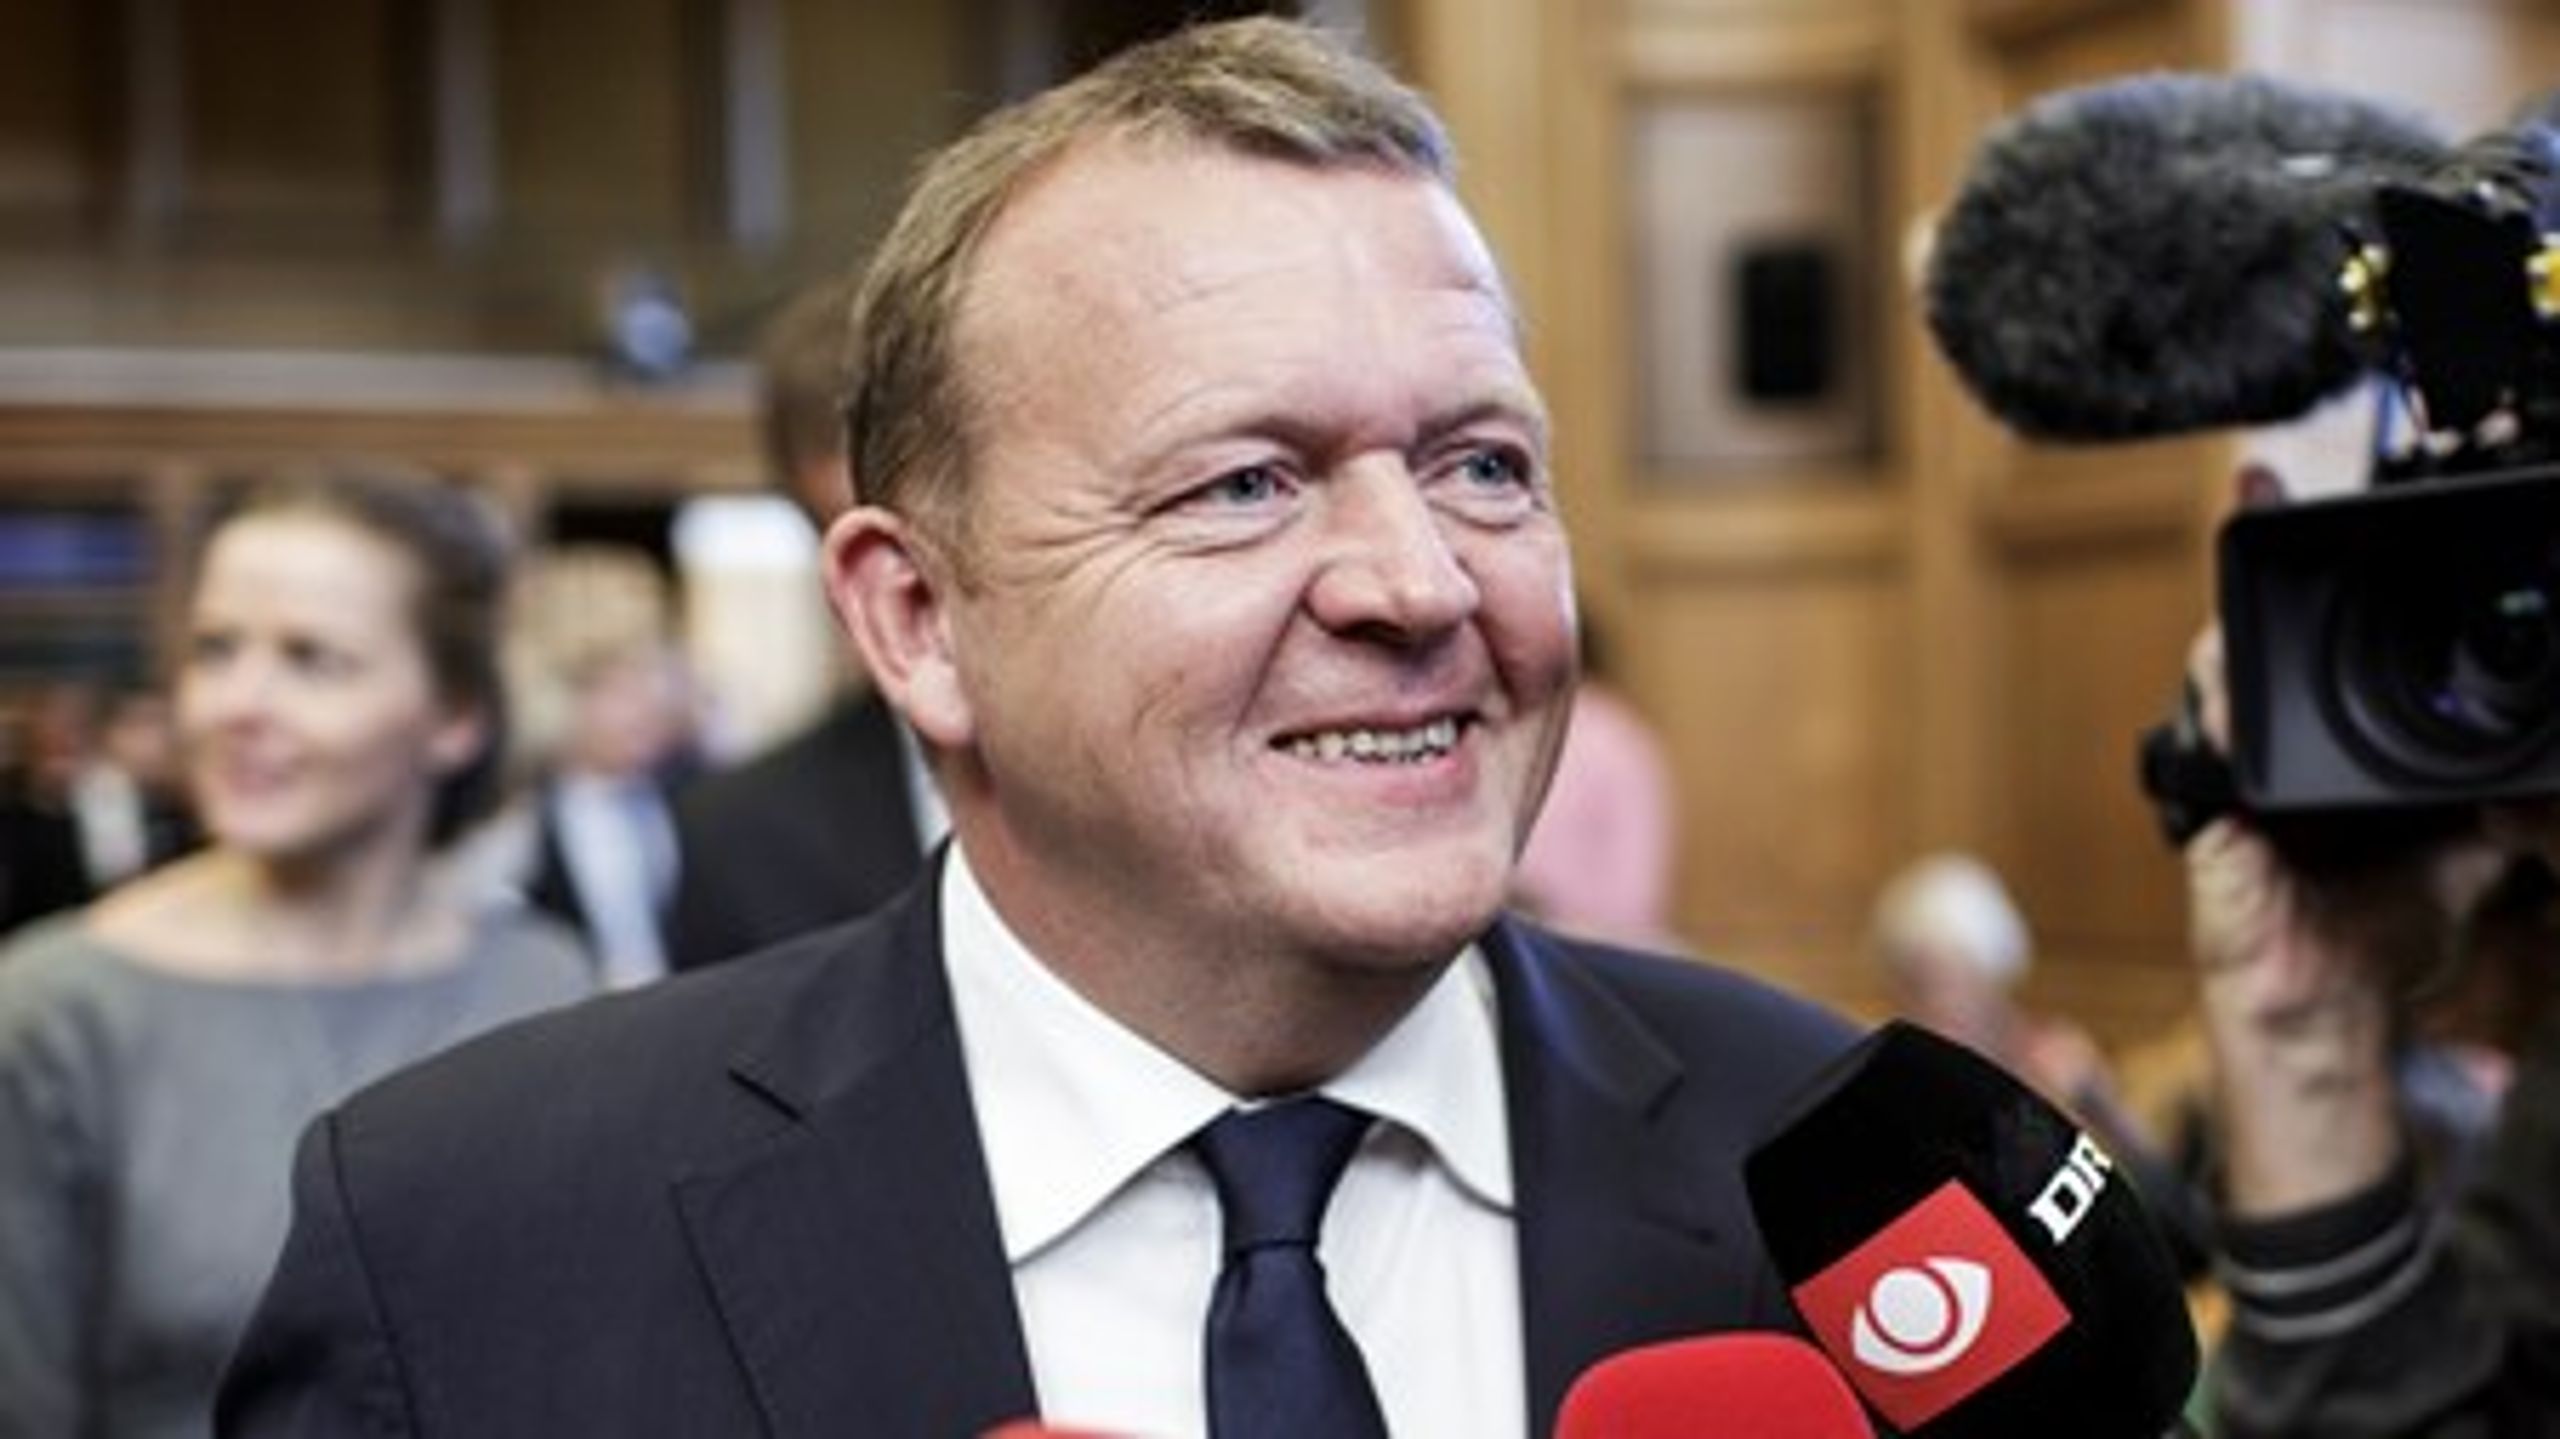 Trods tilbagegang&nbsp;for Venstre står Lars Løkke Rasmussen (V) til at blive landets næste statsminister ifølge&nbsp;Risbjergs snit af meningsmålinger.